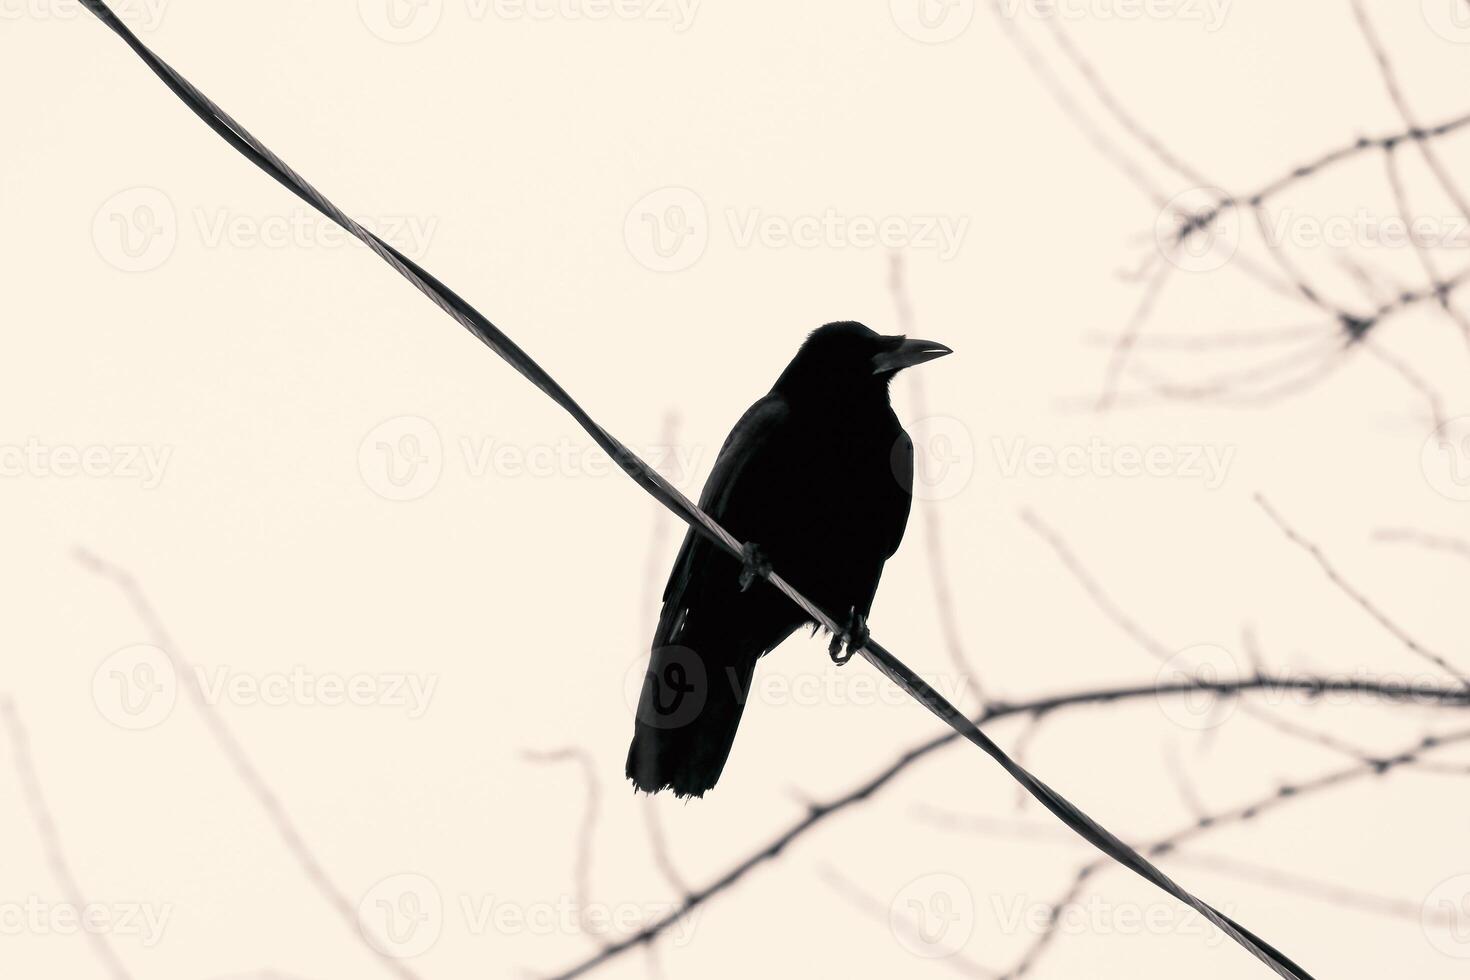 rígido negro electricidad alambres en contra invierno cielo, con un majestuoso cuervo encaramado, creando un encantador urbano escena en sepia tonos foto